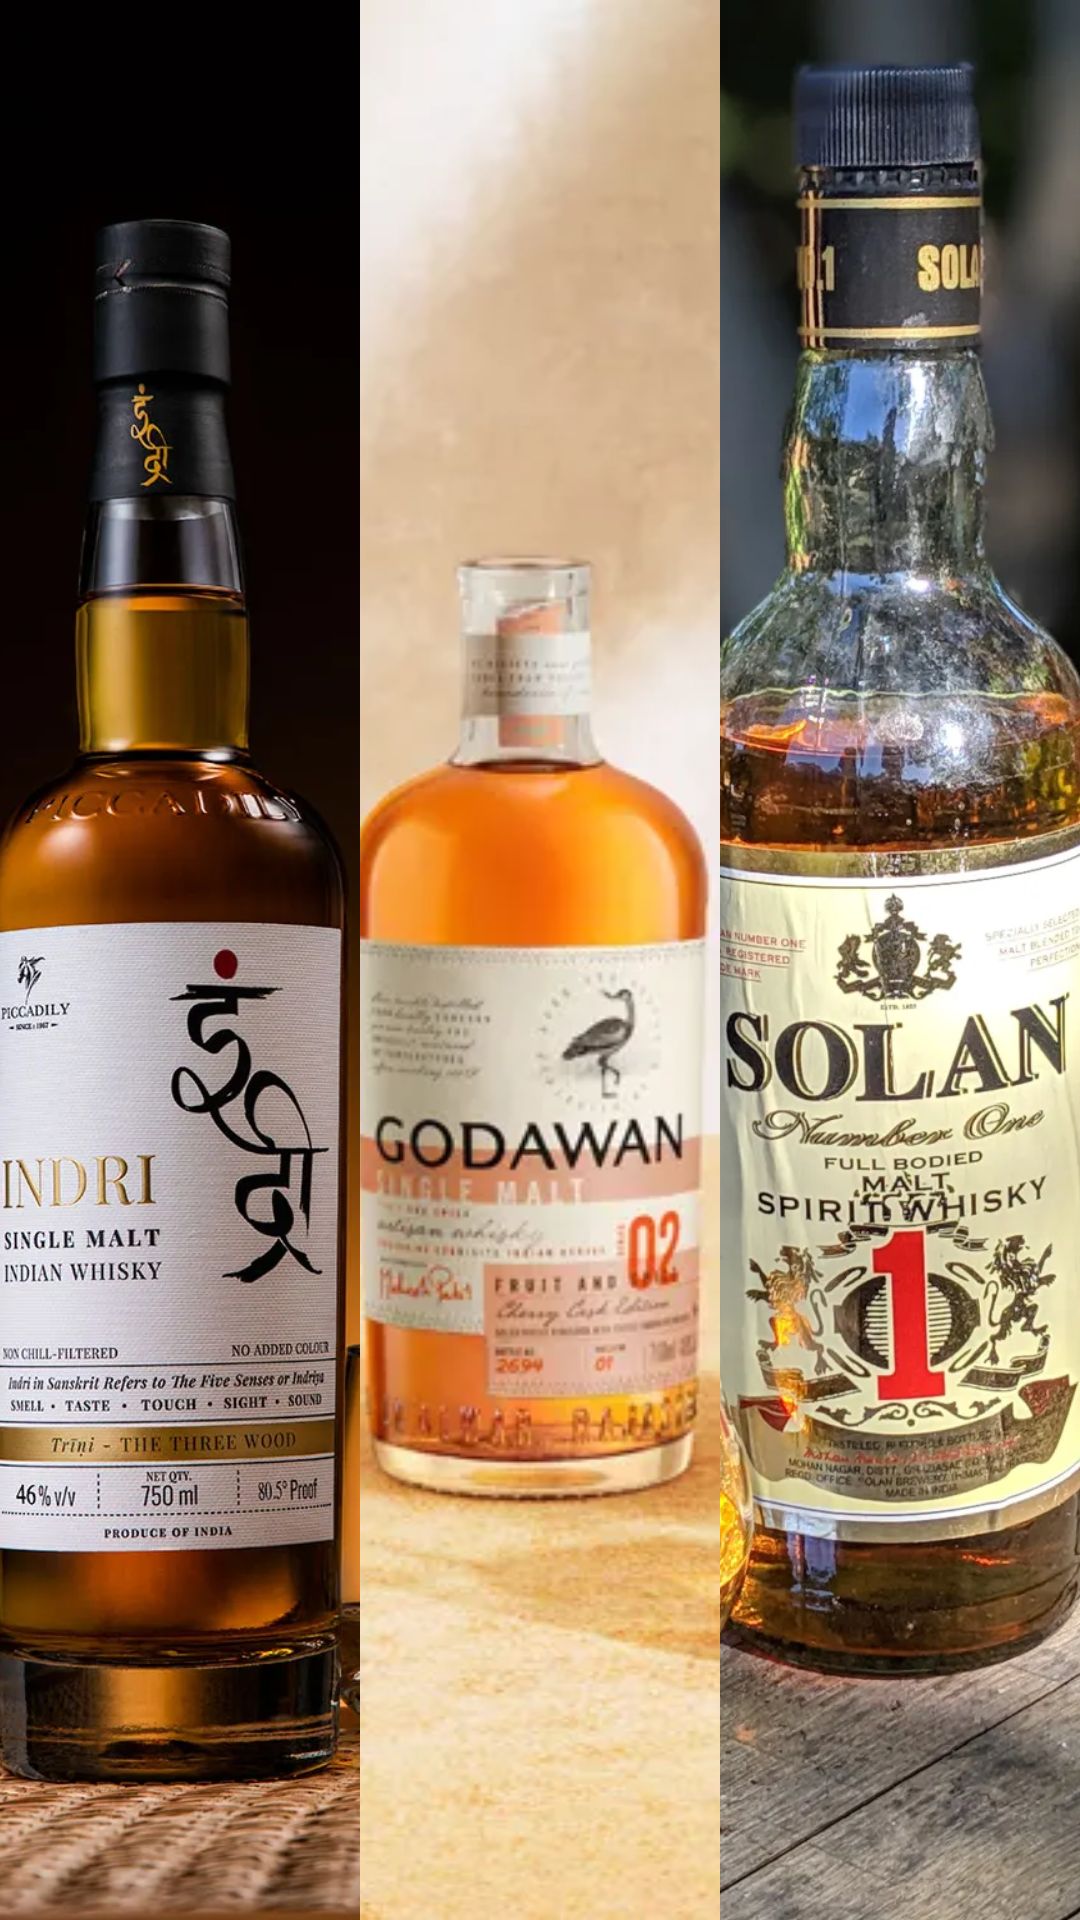 इंद्री से लेकर ज्ञानचंद तक, इन Indian Whisky के नामों को कभी नहीं सुना होगा आपने